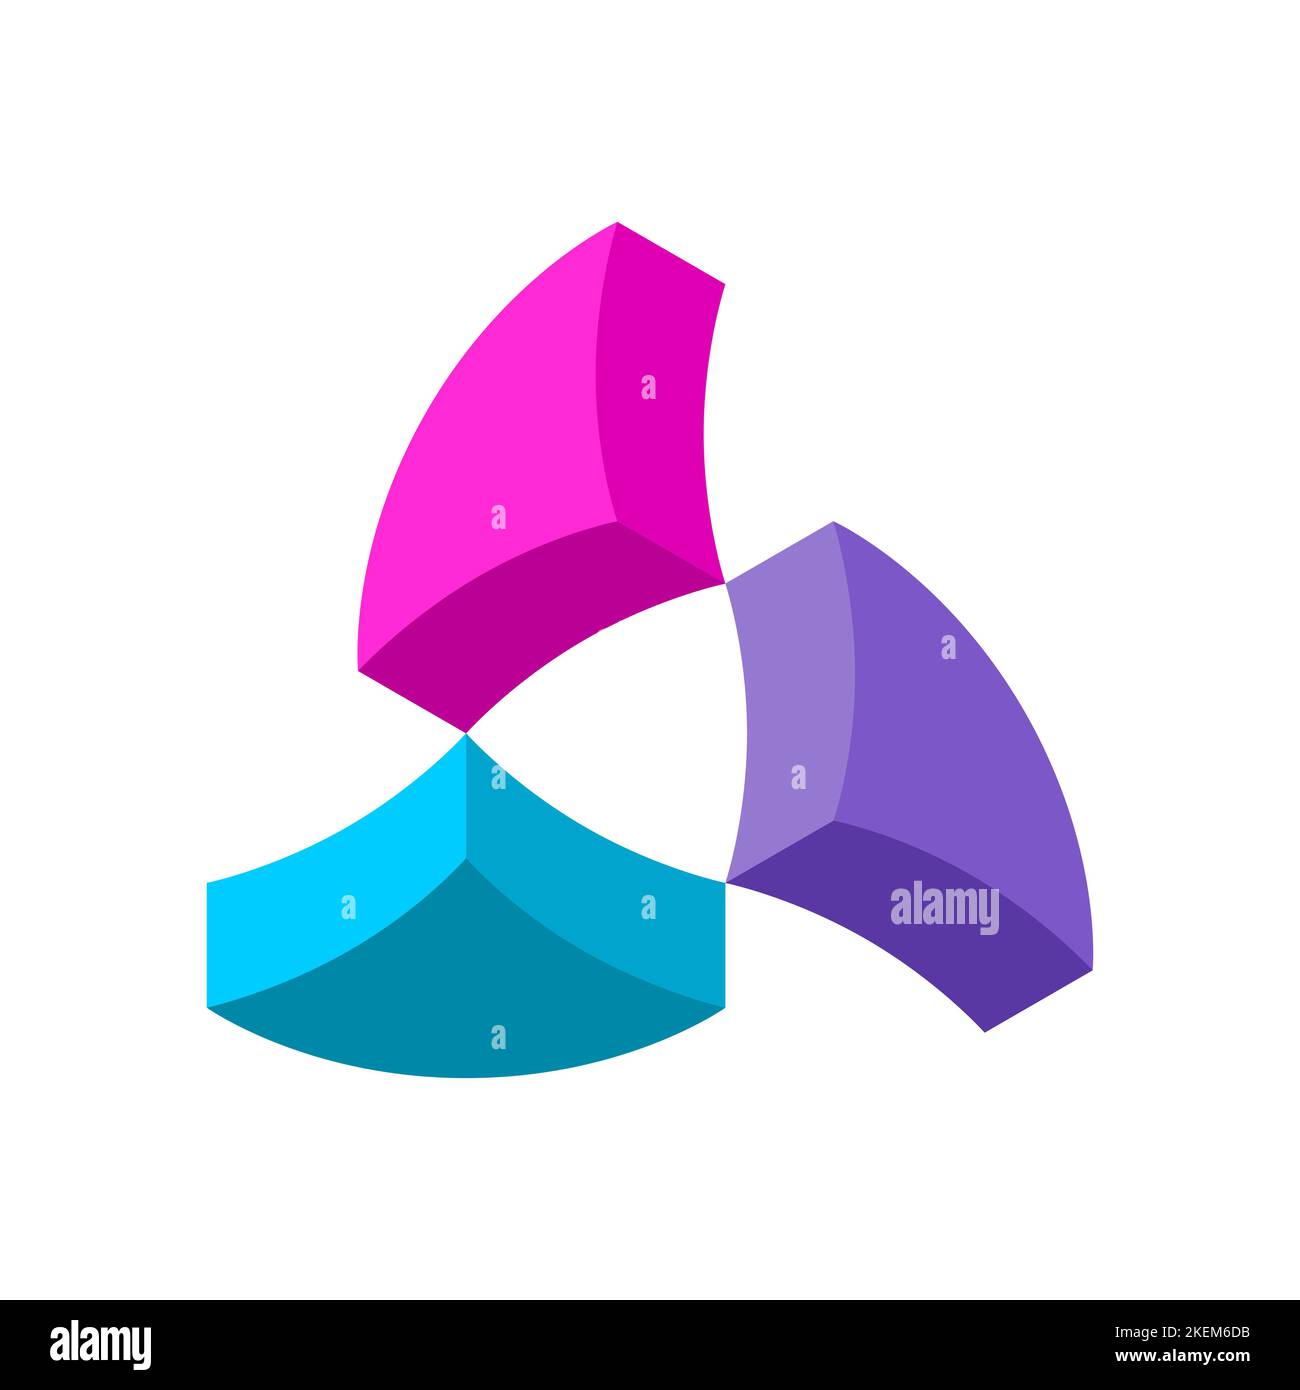 Bunte 3D Logo Design Vorlage. Viertel eines Kreises bilden eine dreieckige Bewegungsform. Drei Propeller-ähnliche Objekte rotieren. Vektorgrafik Stock Vektor